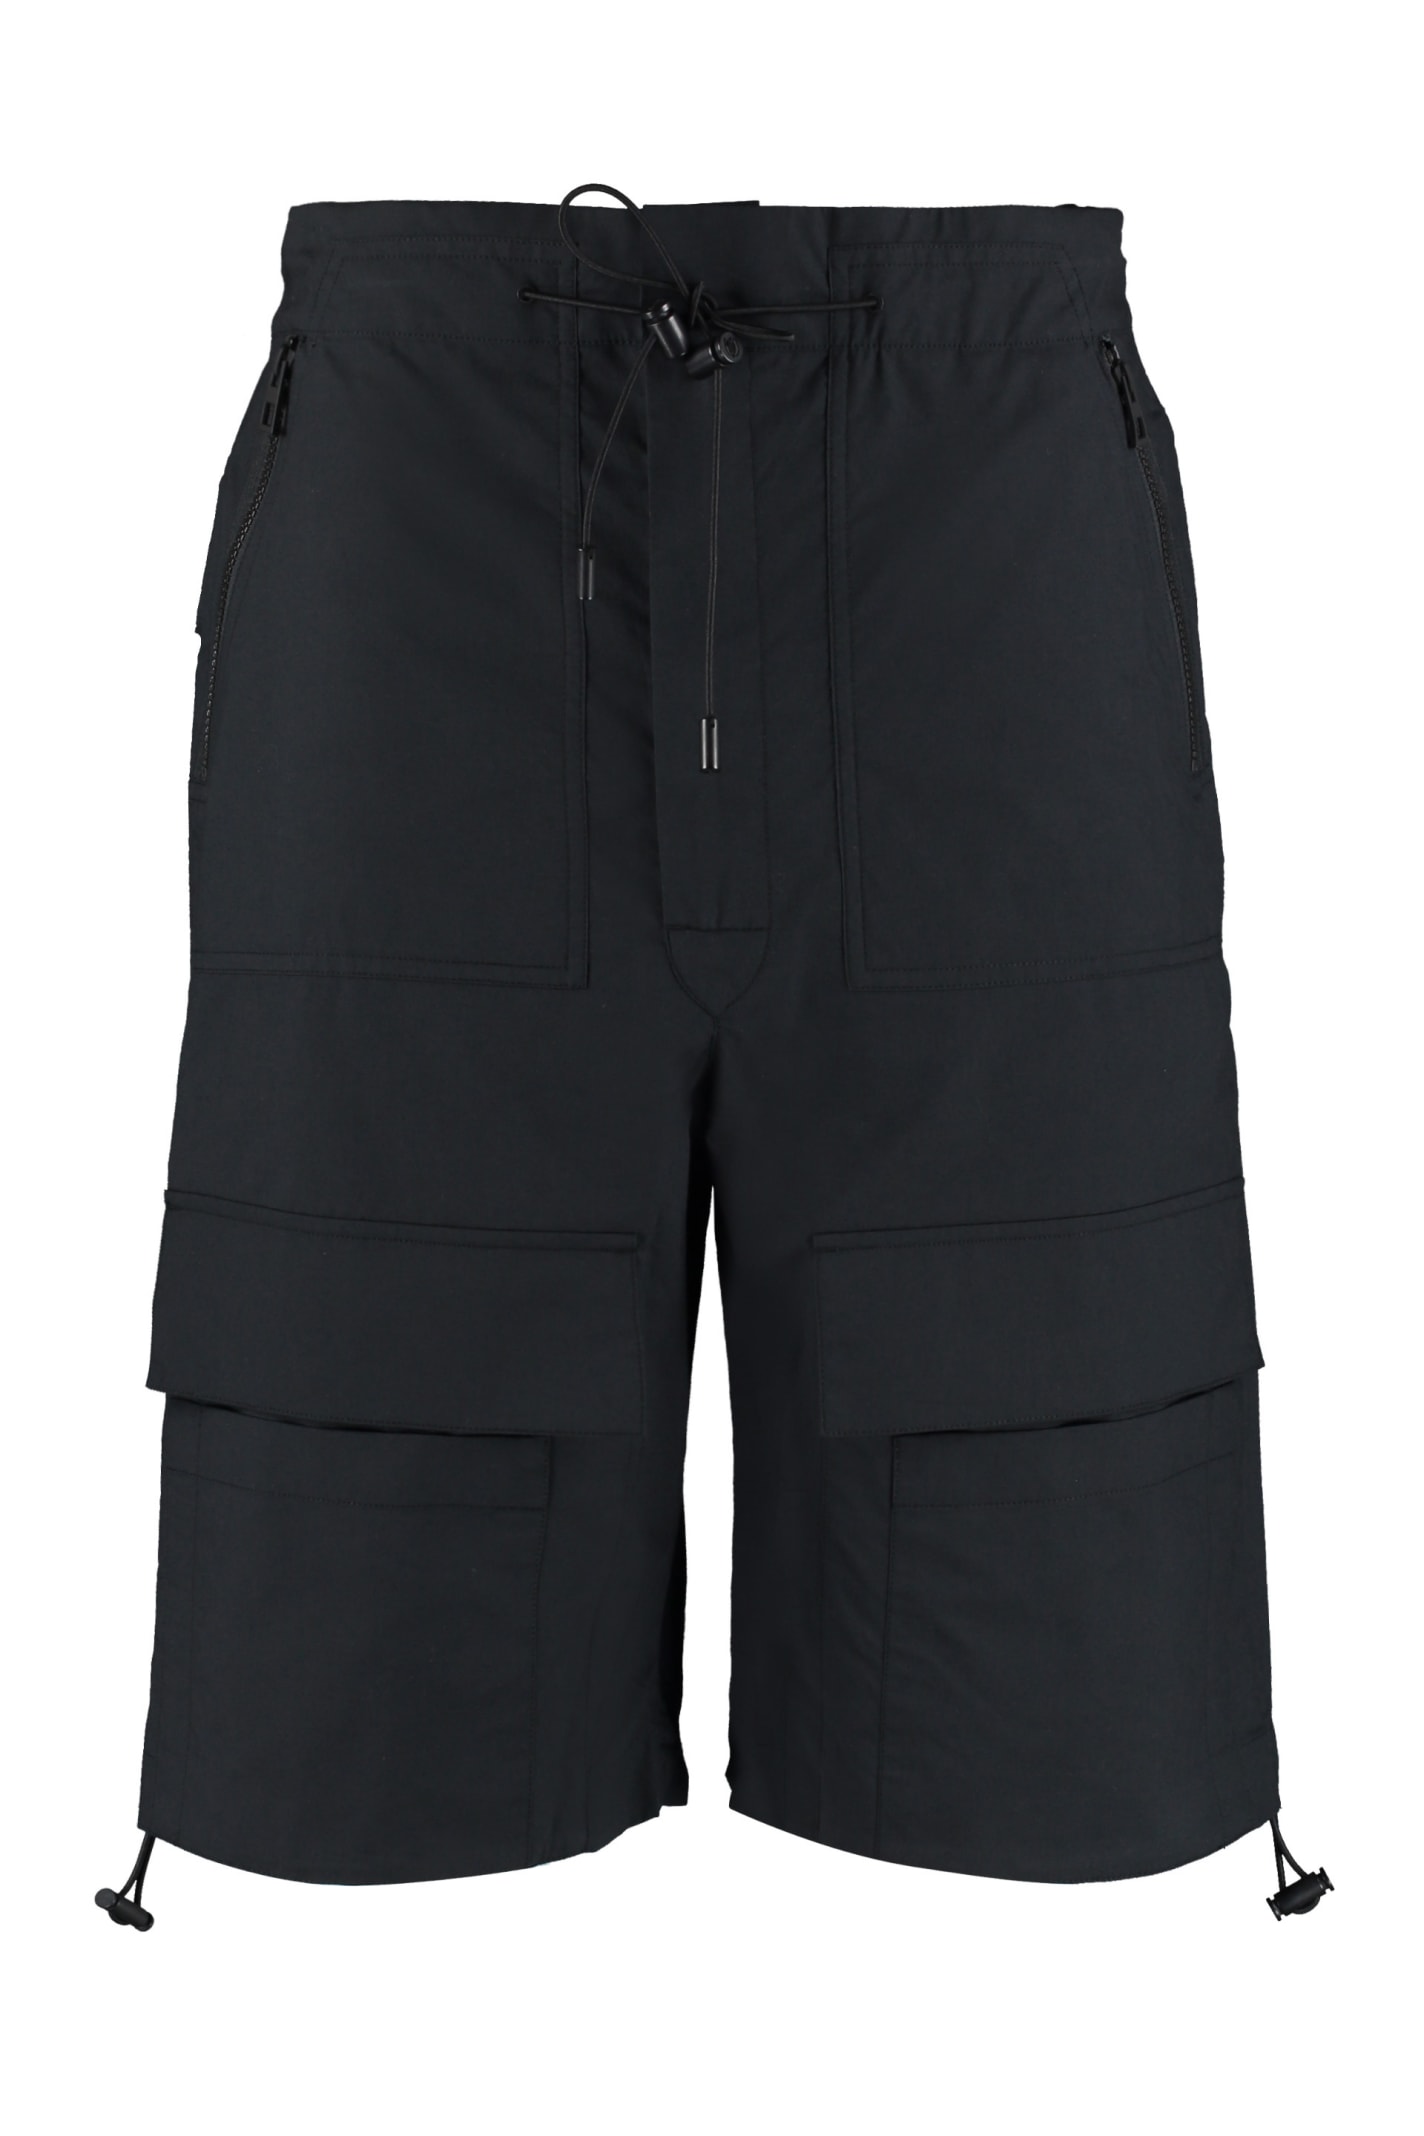 Loewe Cotton Cargo Bermuda Shorts